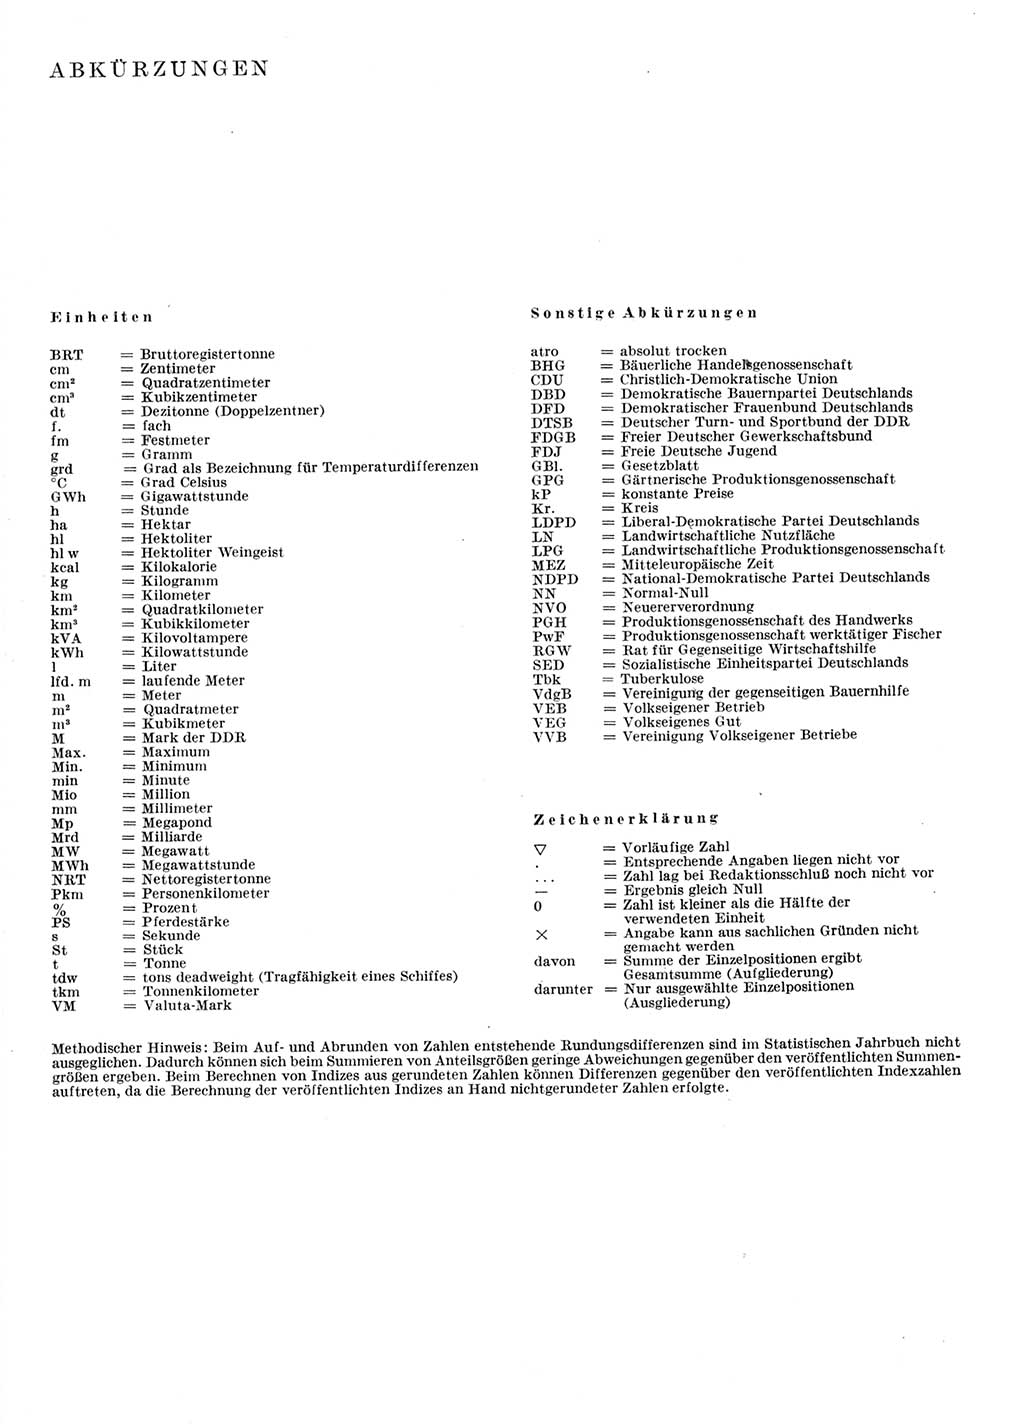 Statistisches Jahrbuch der Deutschen Demokratischen Republik (DDR) 1976, Seite 4 (Stat. Jb. DDR 1976, S. 4)